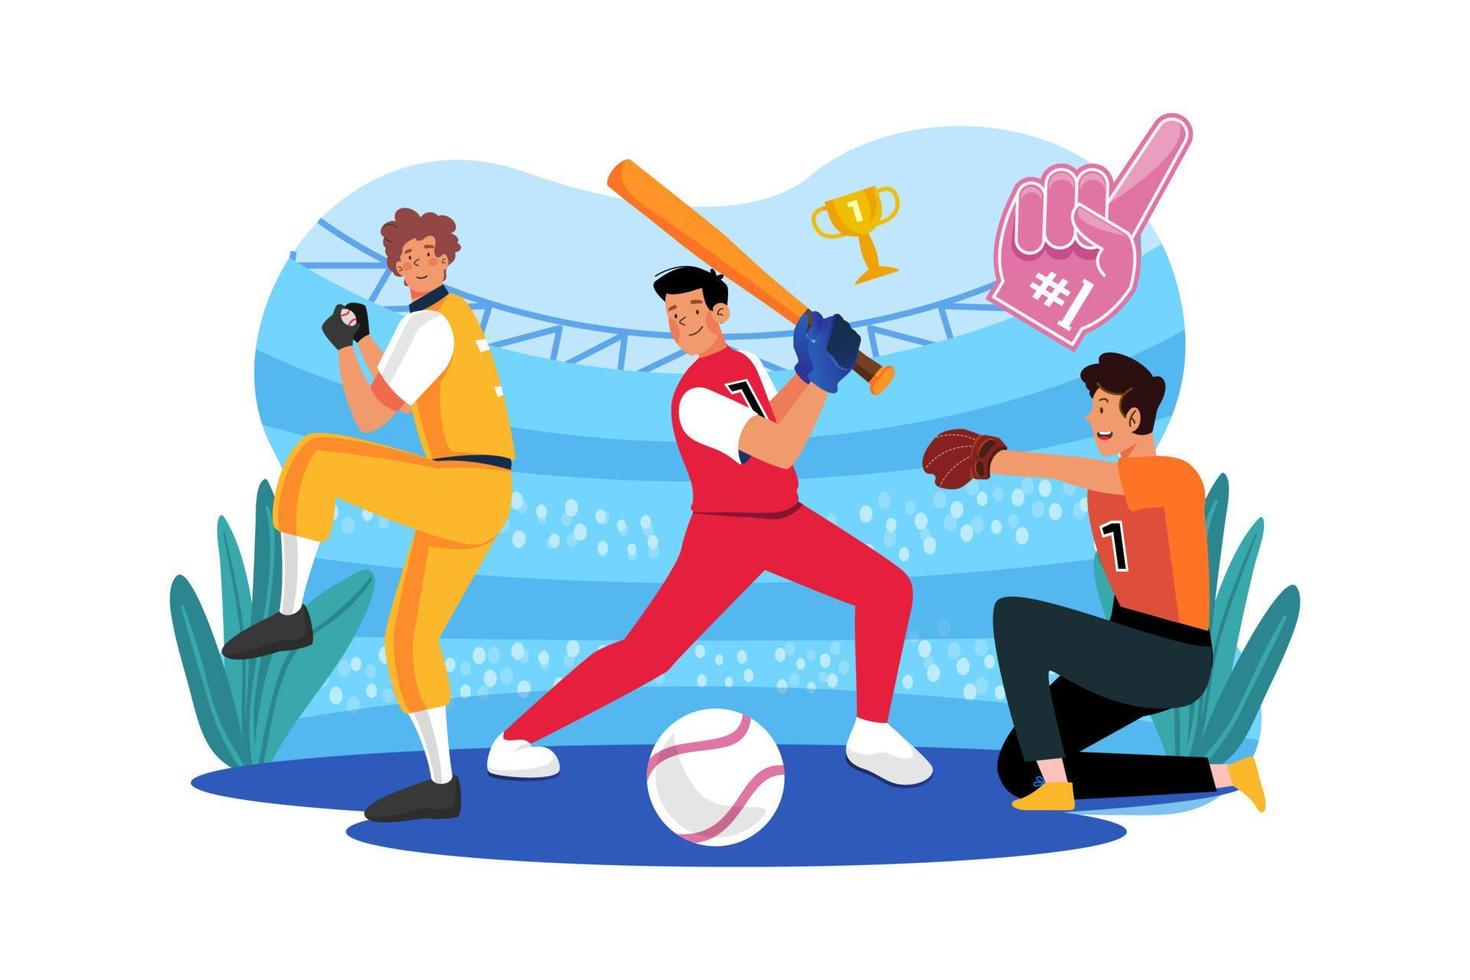 Baseball team Illustration concept on white background vector